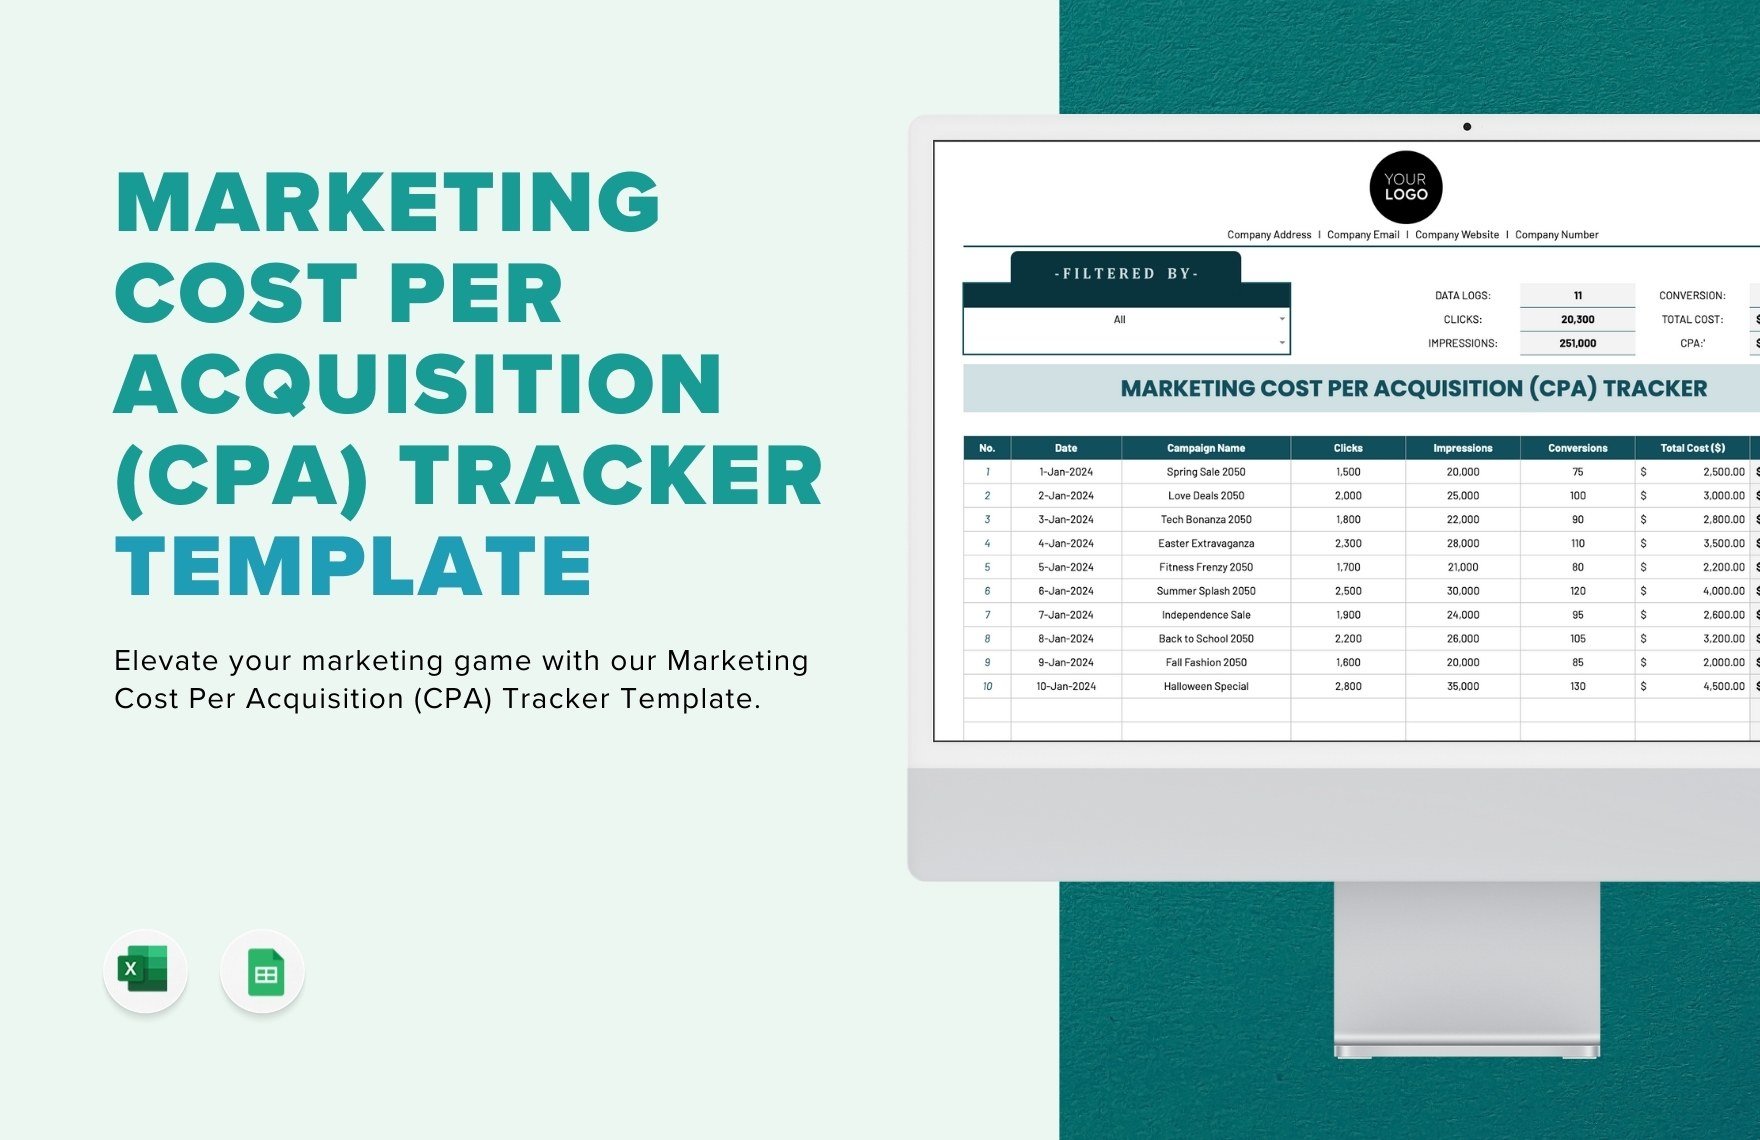 Marketing Cost Per Acquisition (CPA) Tracker Template